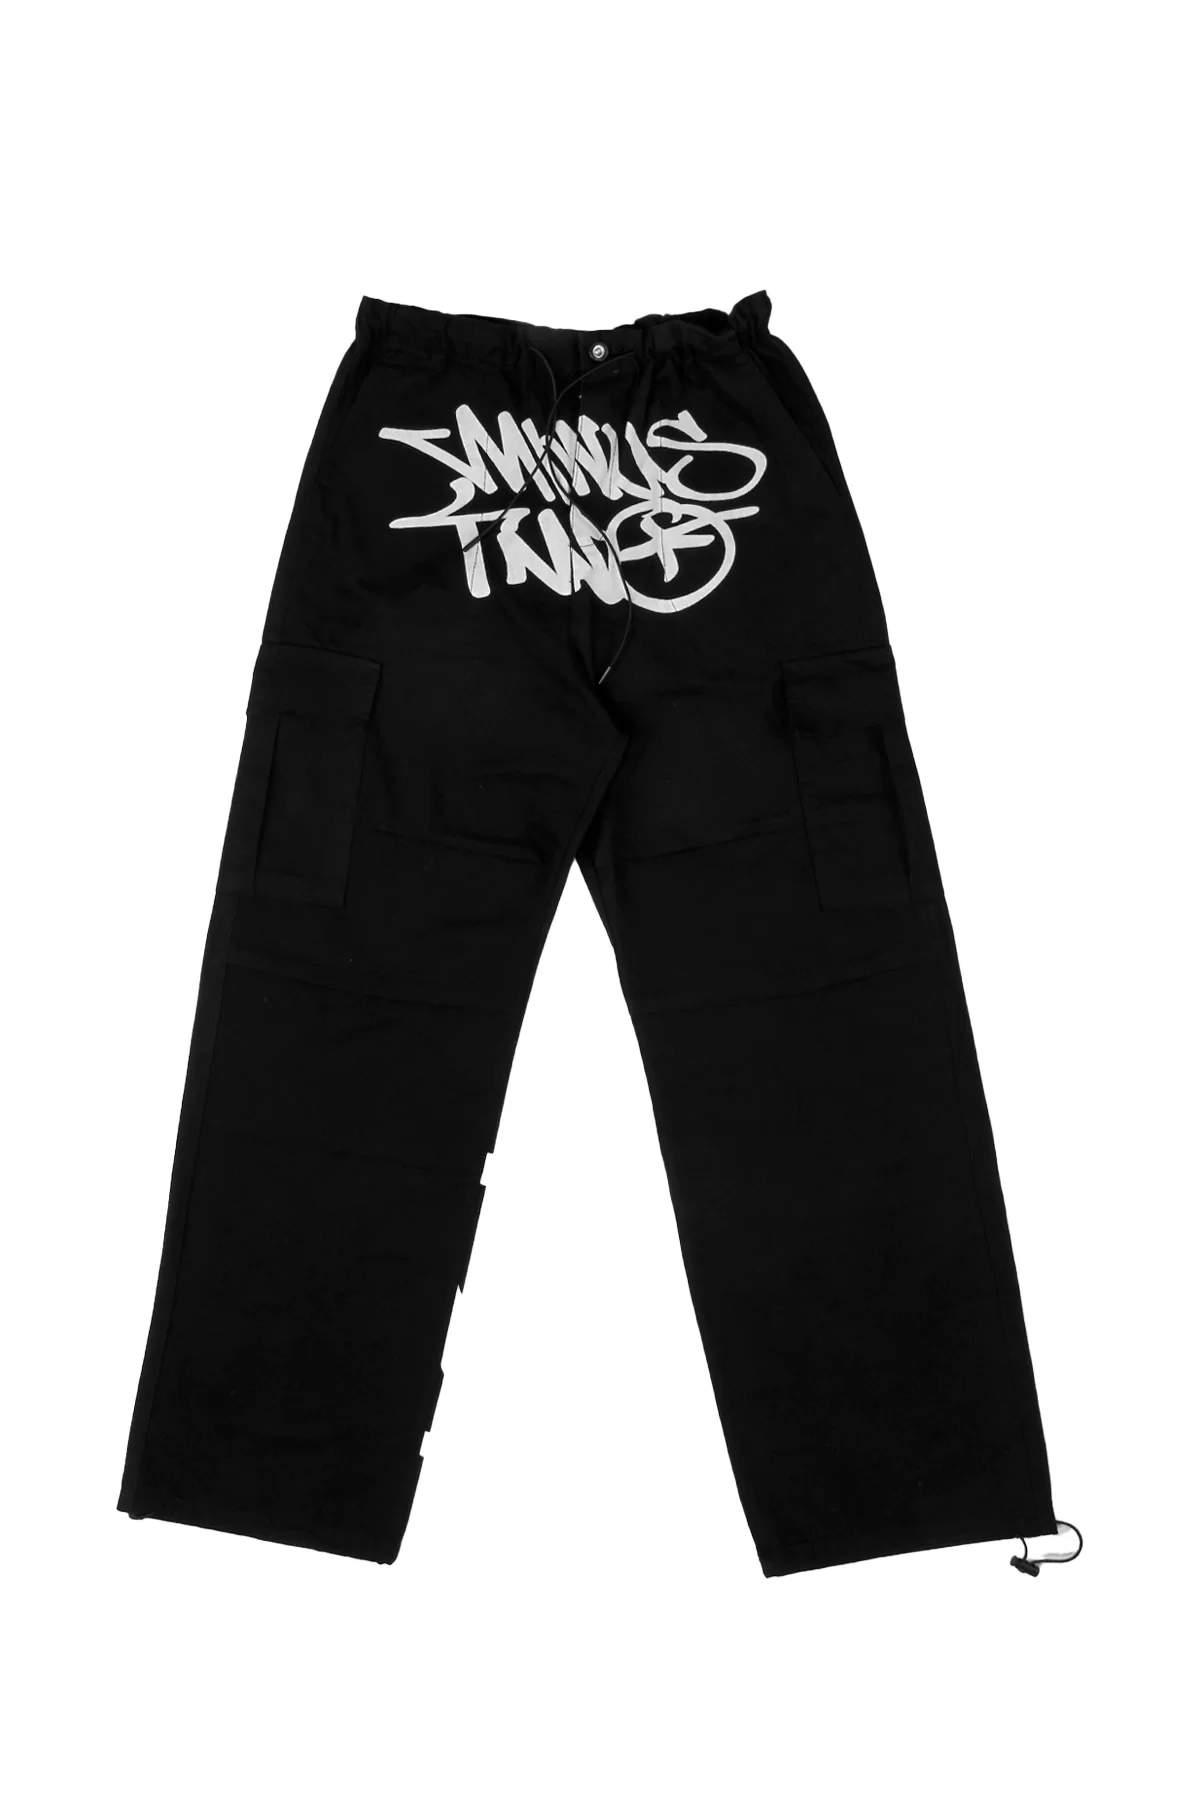 Graffiti Beyaz Yazı Baskılı Paça Lastikli Premium Siyah Kargo Pantolon